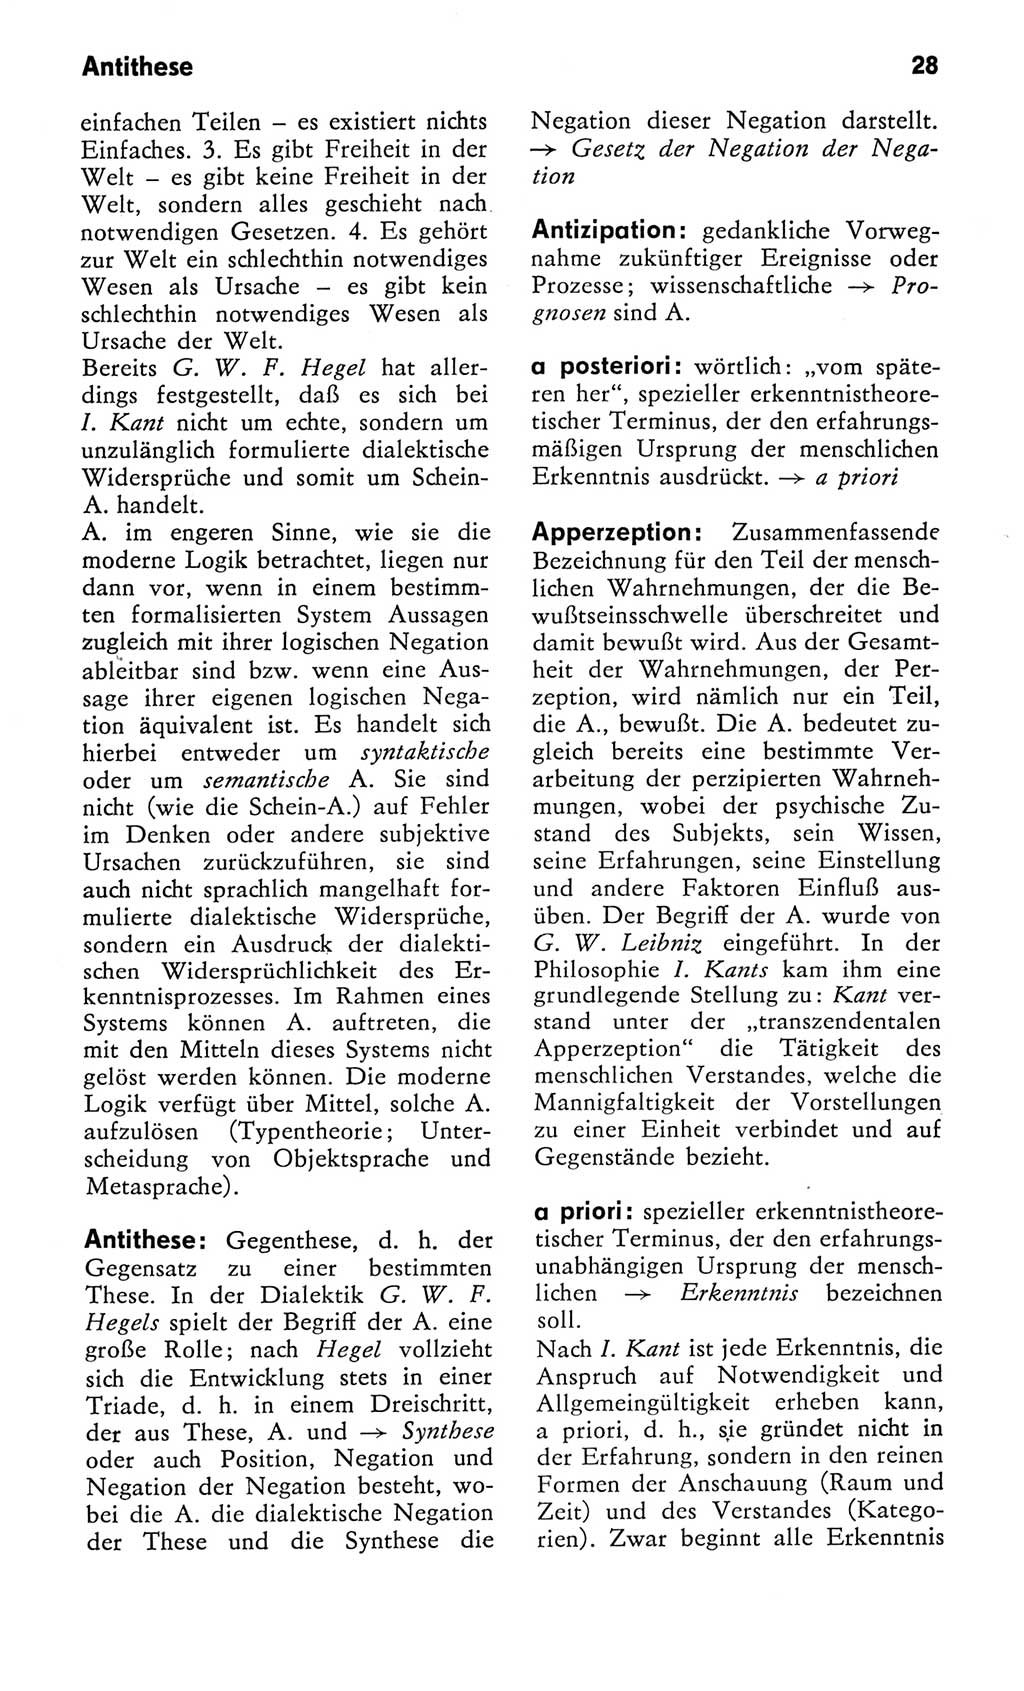 Kleines Wörterbuch der marxistisch-leninistischen Philosophie [Deutsche Demokratische Republik (DDR)] 1982, Seite 28 (Kl. Wb. ML Phil. DDR 1982, S. 28)